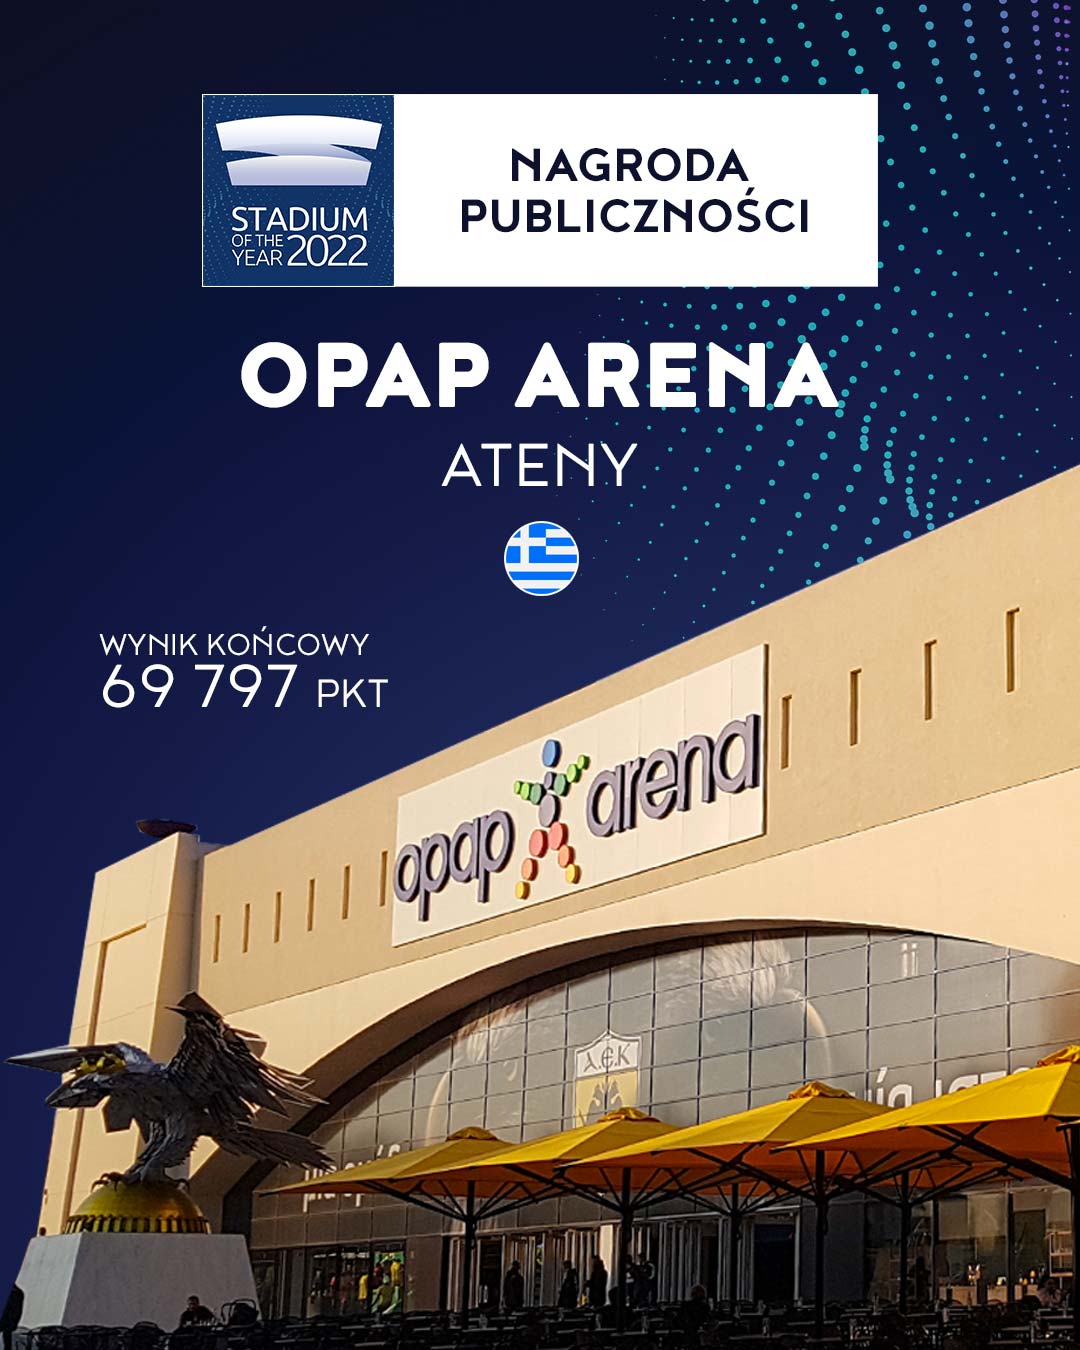 OPAP Arena - winner of Stadium of the Year 2022